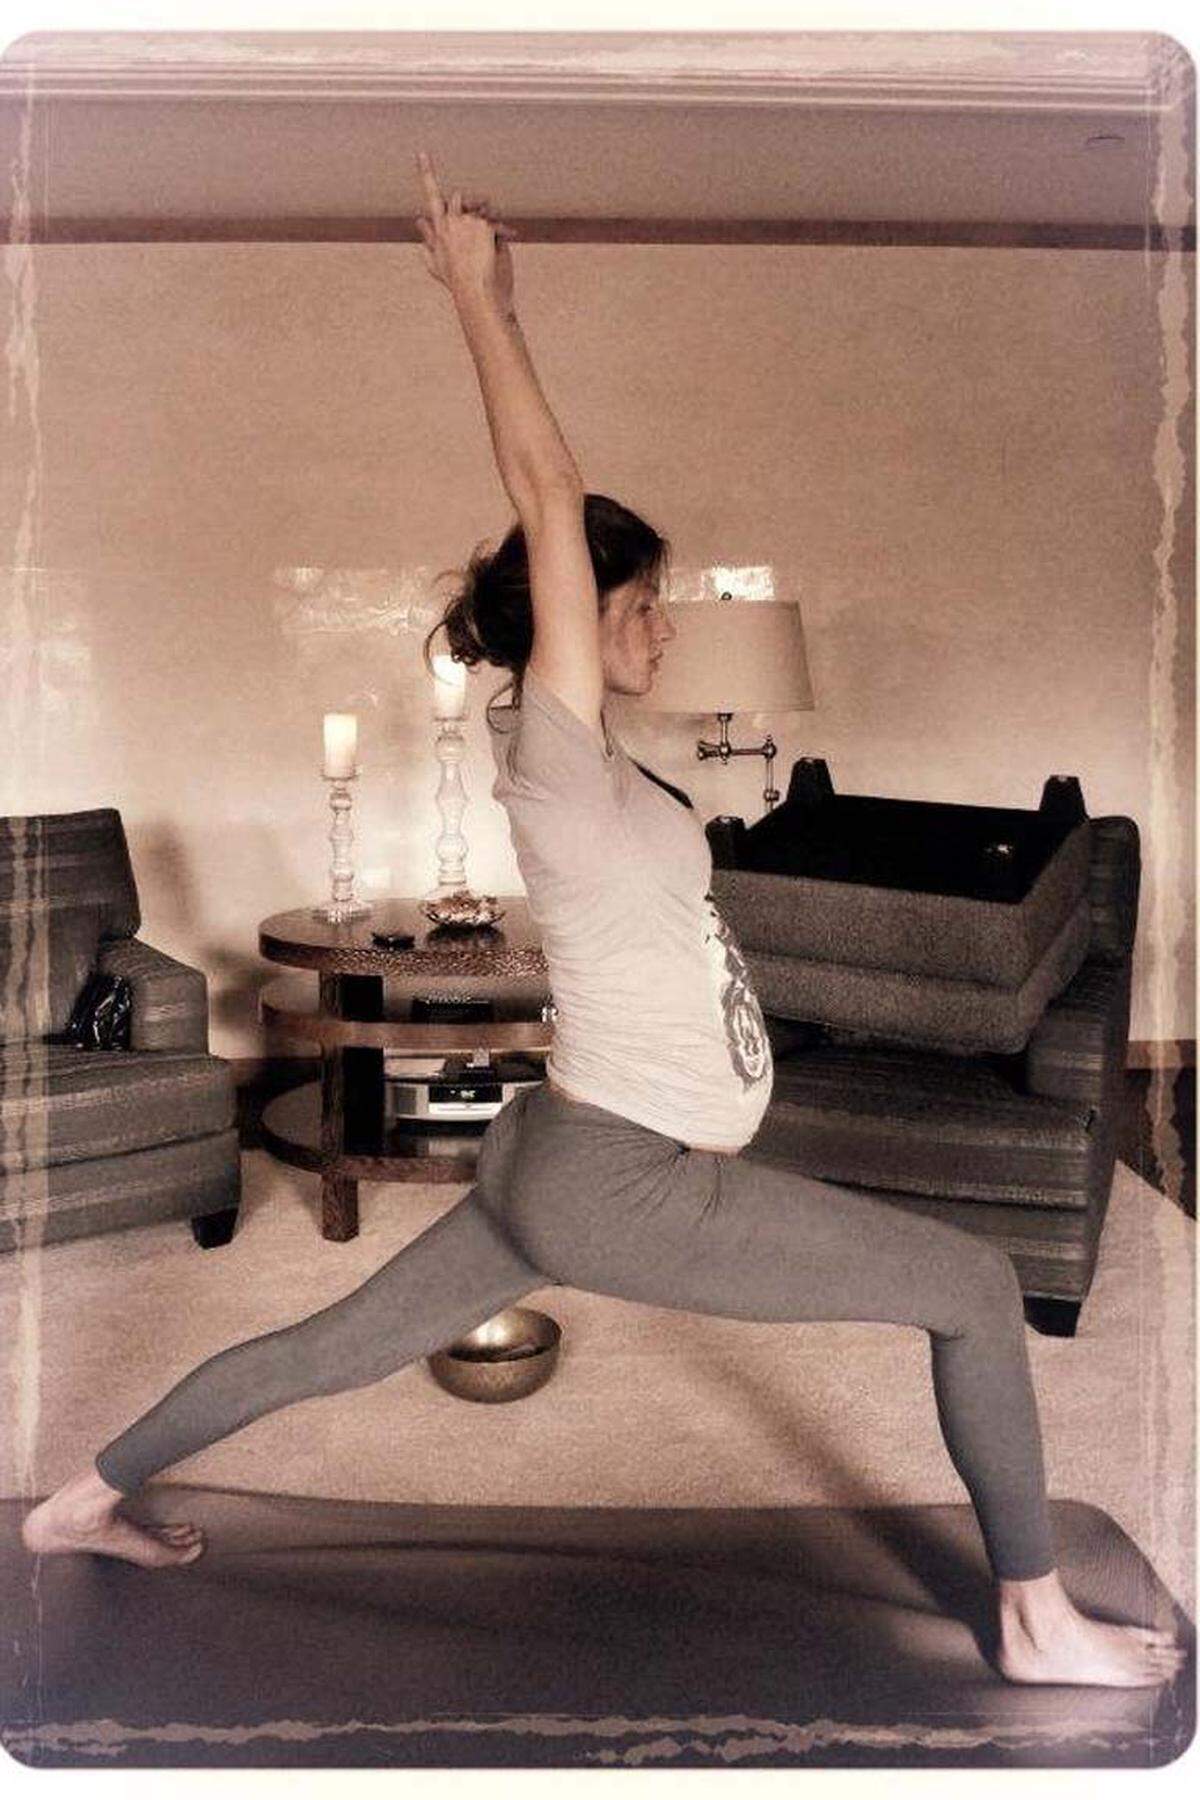 Das brasilianische Supermodel Gisele Bündchen ließ uns über Facebook wissen, dass sie sich in der Schwangerschaft mit Yoga fit hält.